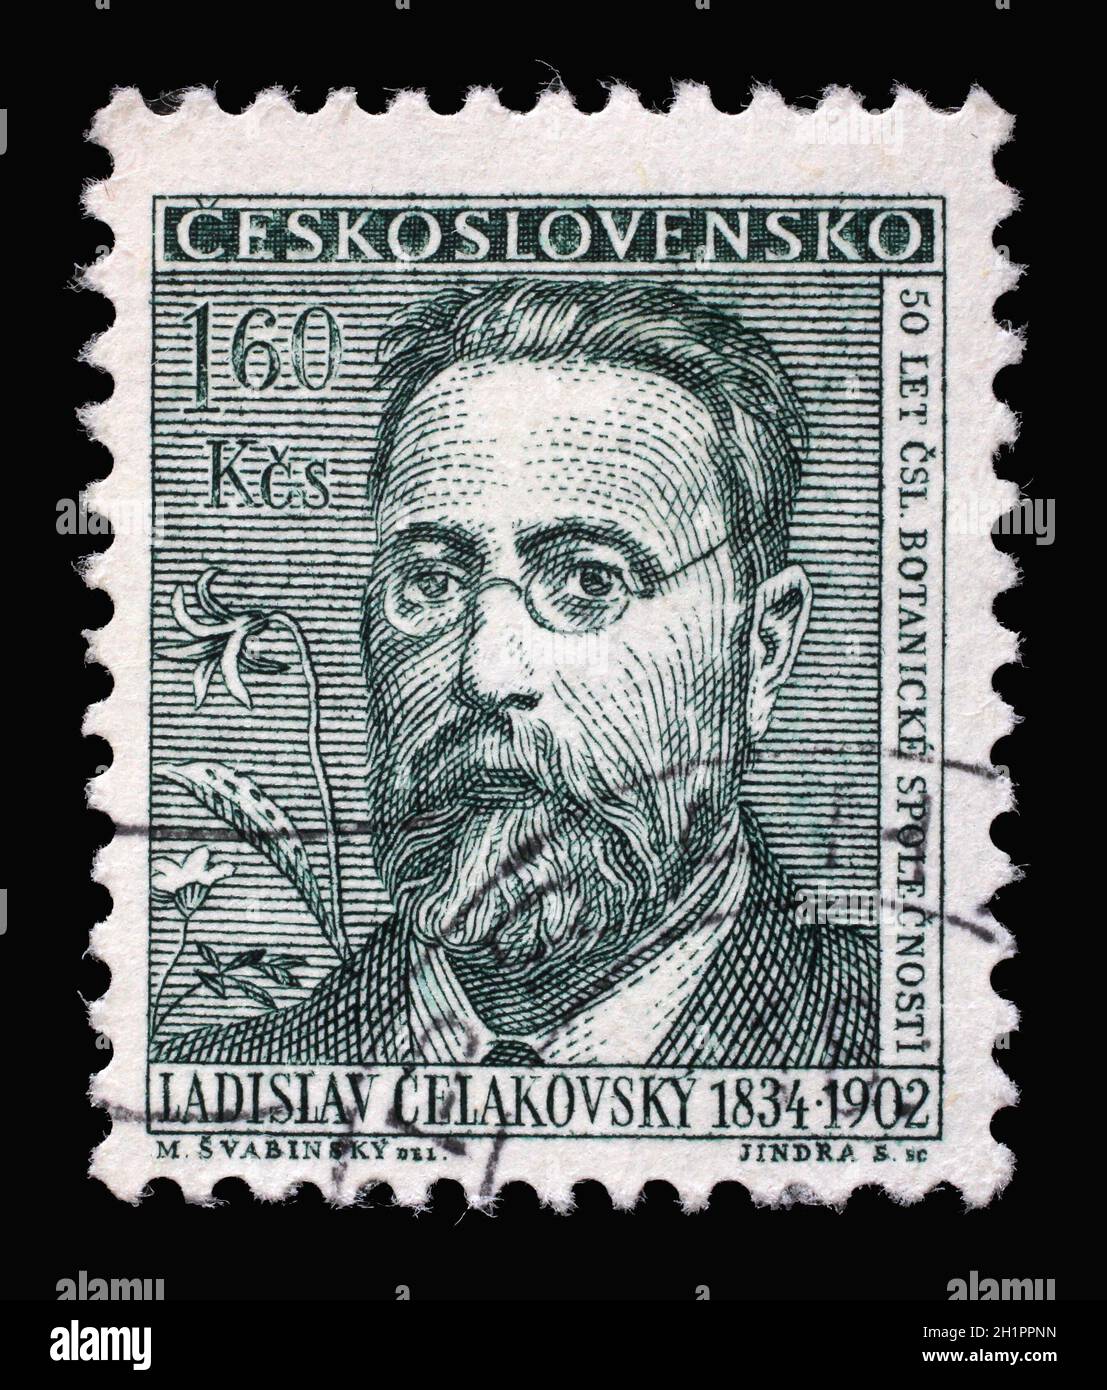 Die in der Tschechoslowakei gedruckte Briefmarke aus der Ausgabe "Kulturelle Berühmtheiten und Jahrestage" zeigt Ladislav Celakovsky (Gründer der Tschechischen Botanischen Gesellschaft), Stockfoto